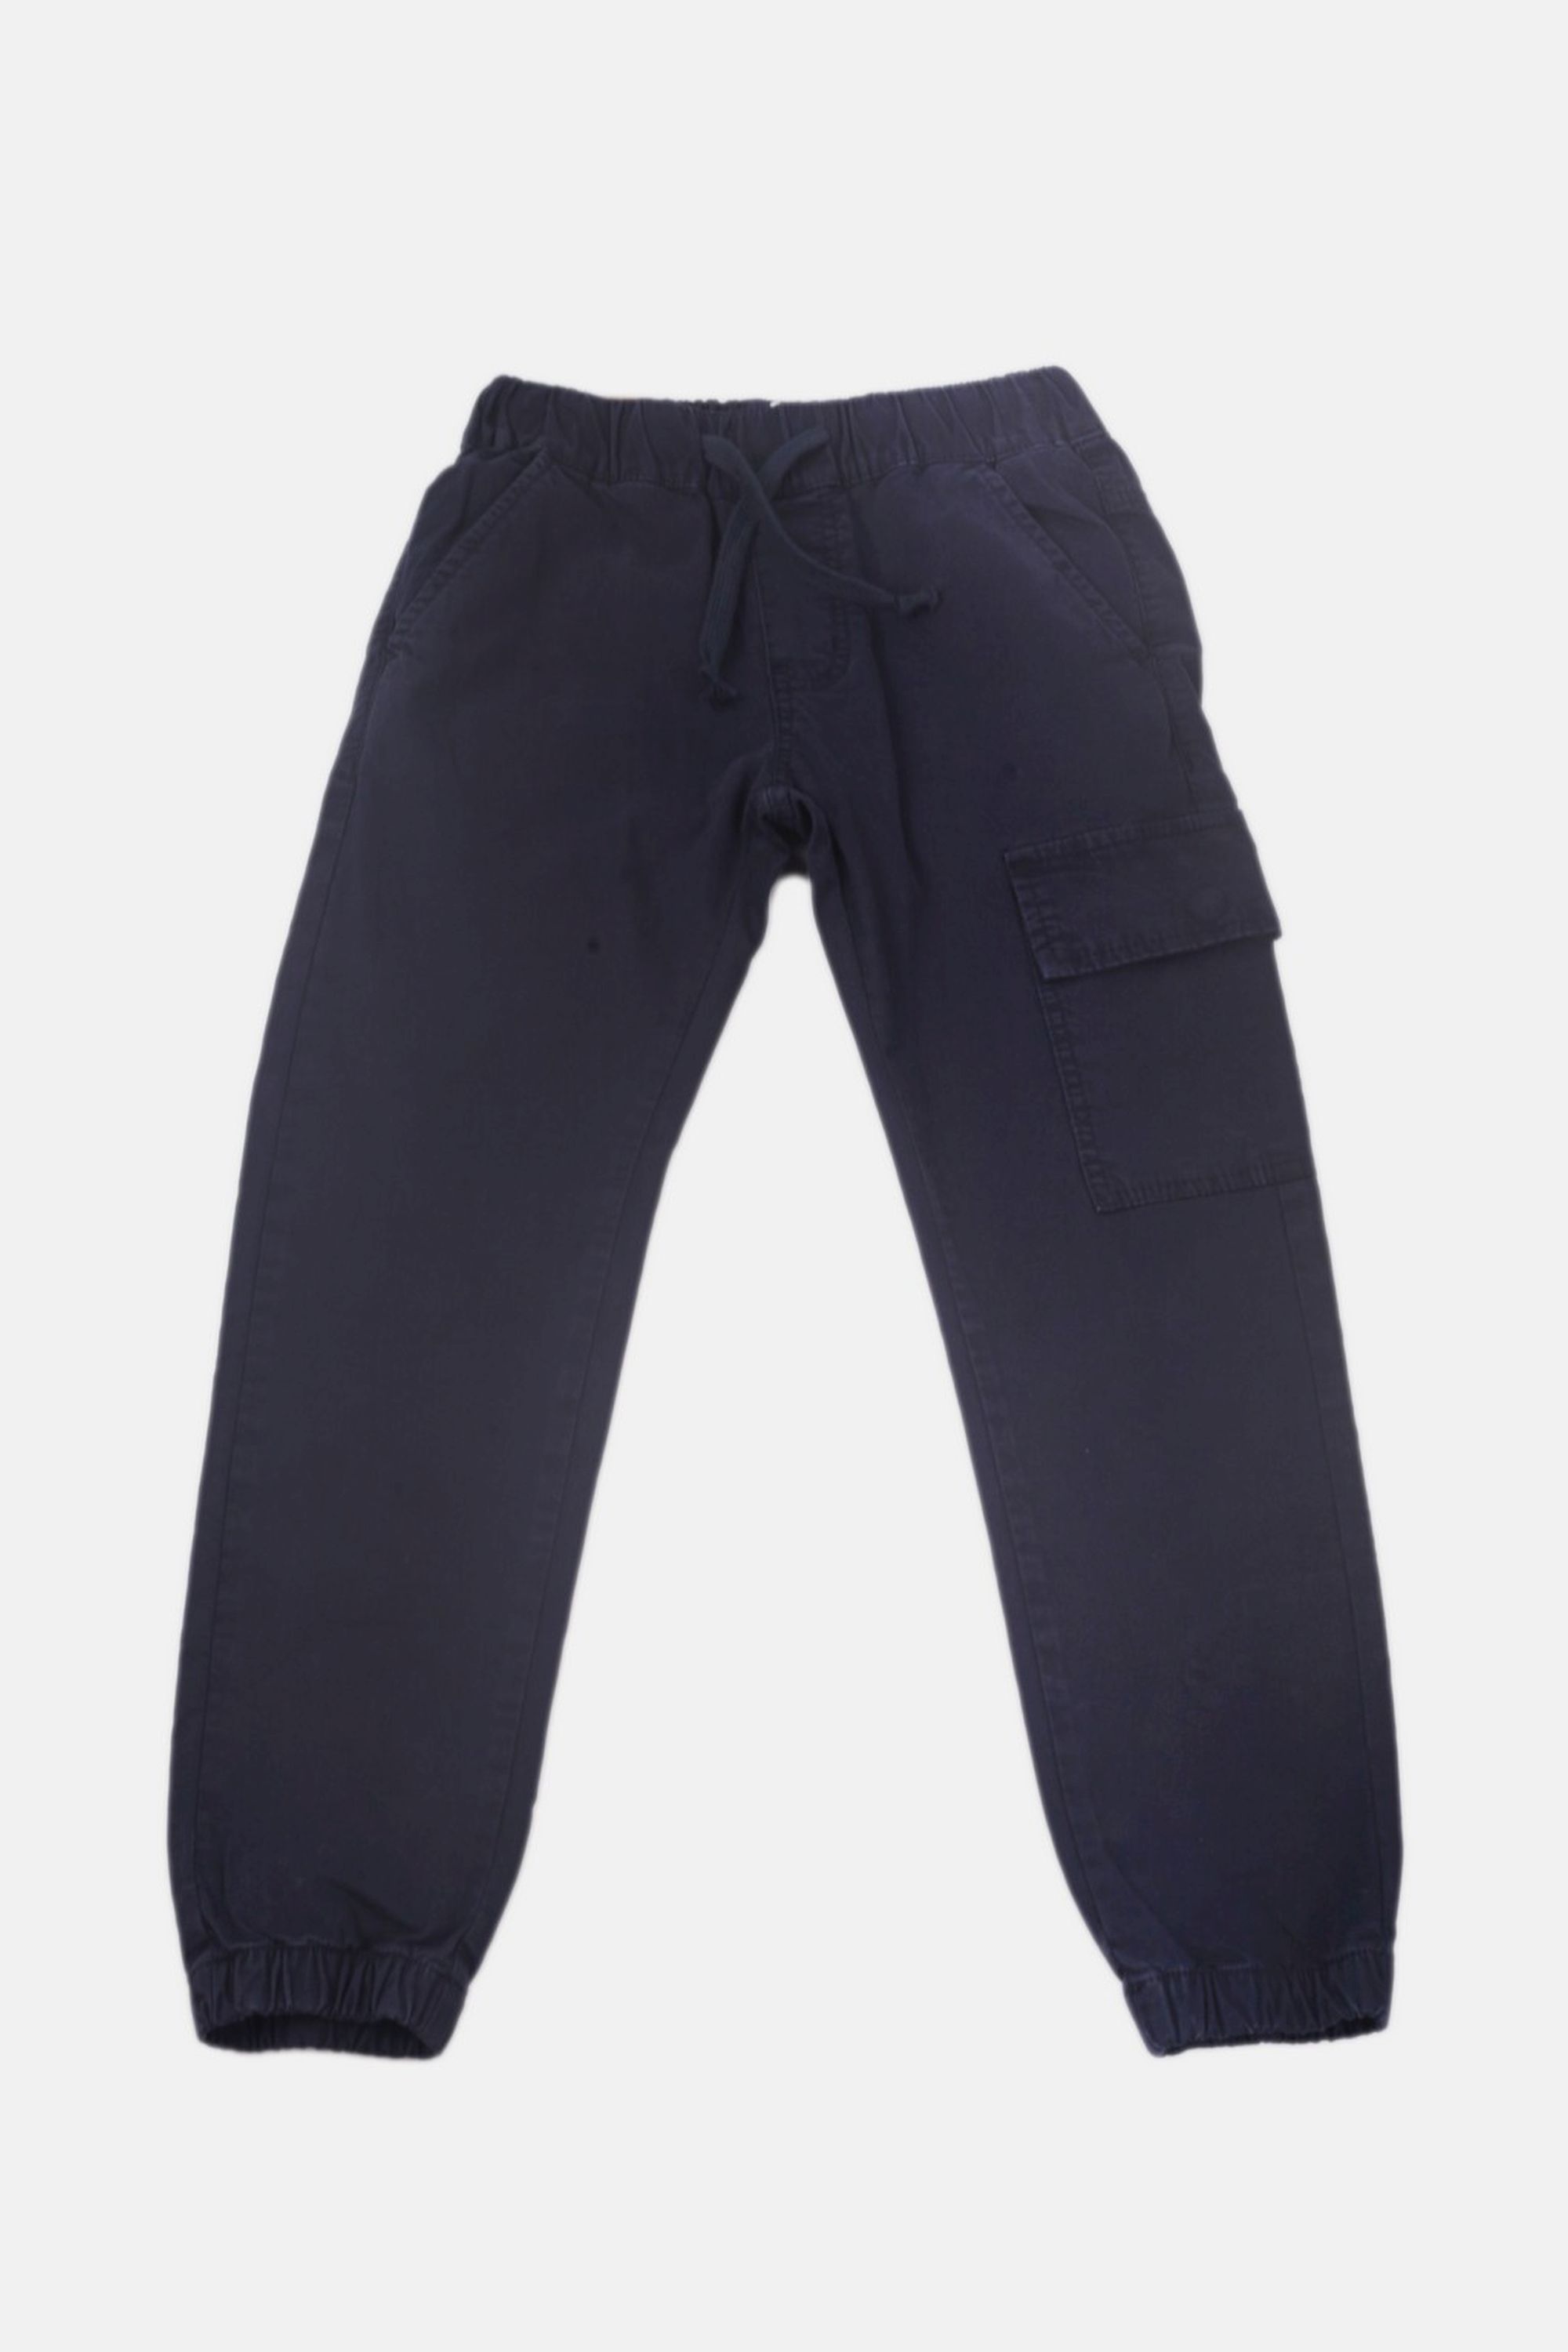 Chlapecké bavlněné kalhoty s gumou v pase/Hnědá, modrá Barva: Modrá, Velikost: vel. 2 (86/92 cm)